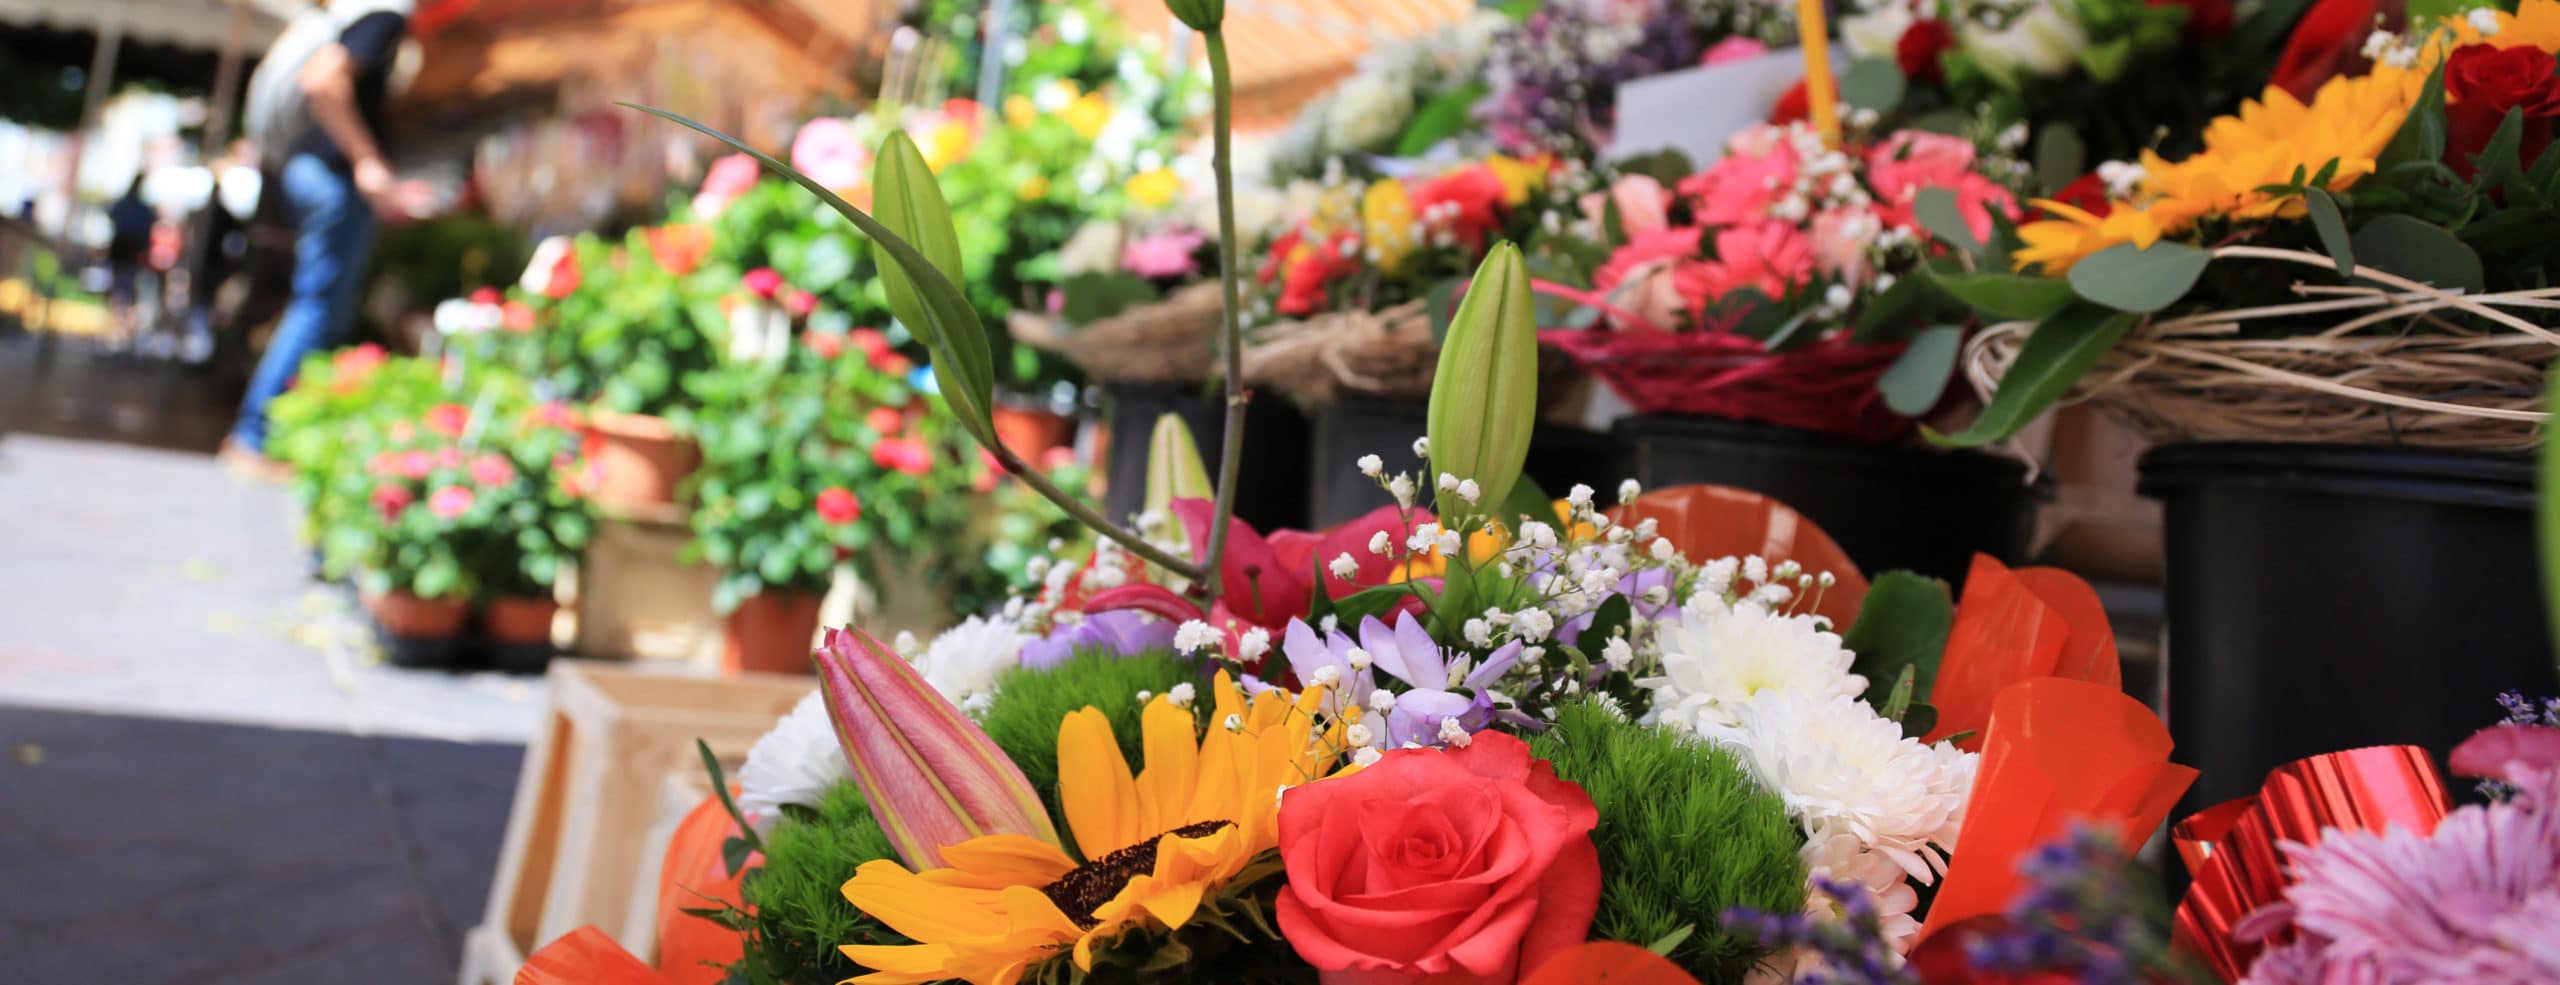 Fleuriste Rive-Sud, Le Marché aux fleurs du Village